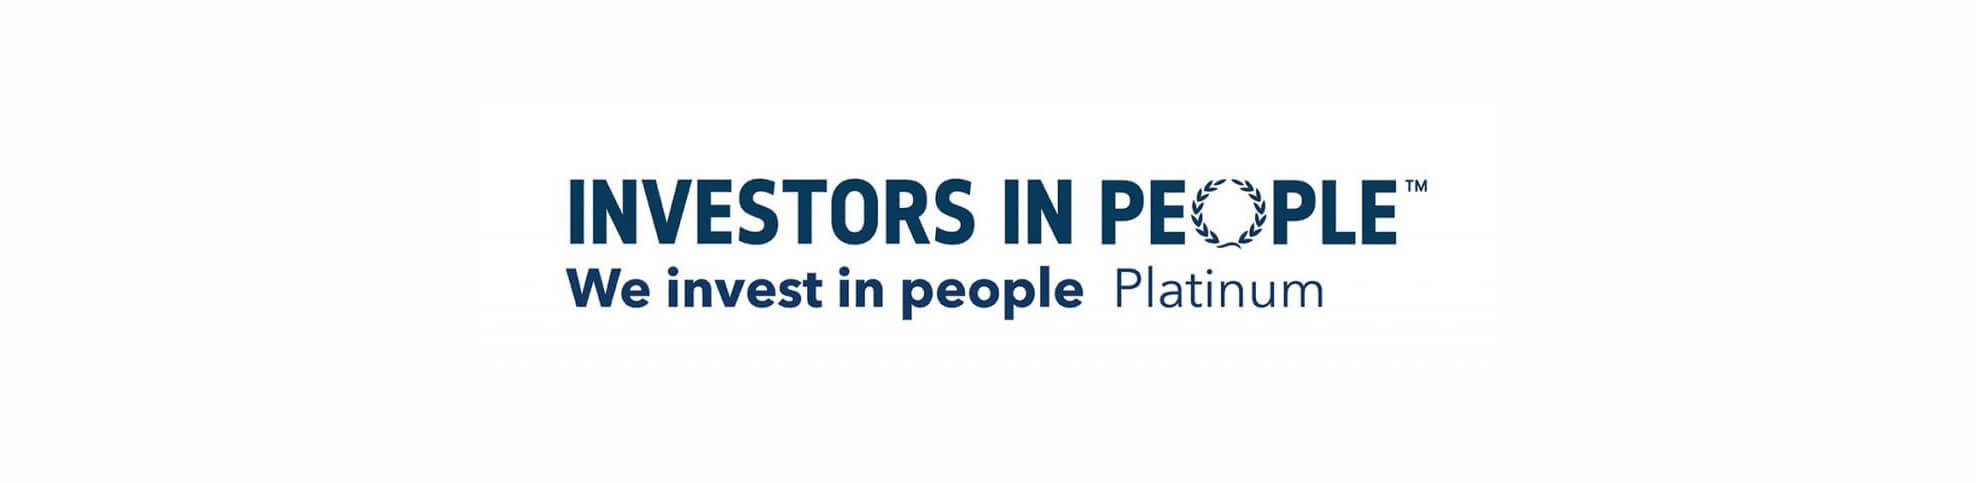 We are Platinum Investors in People!